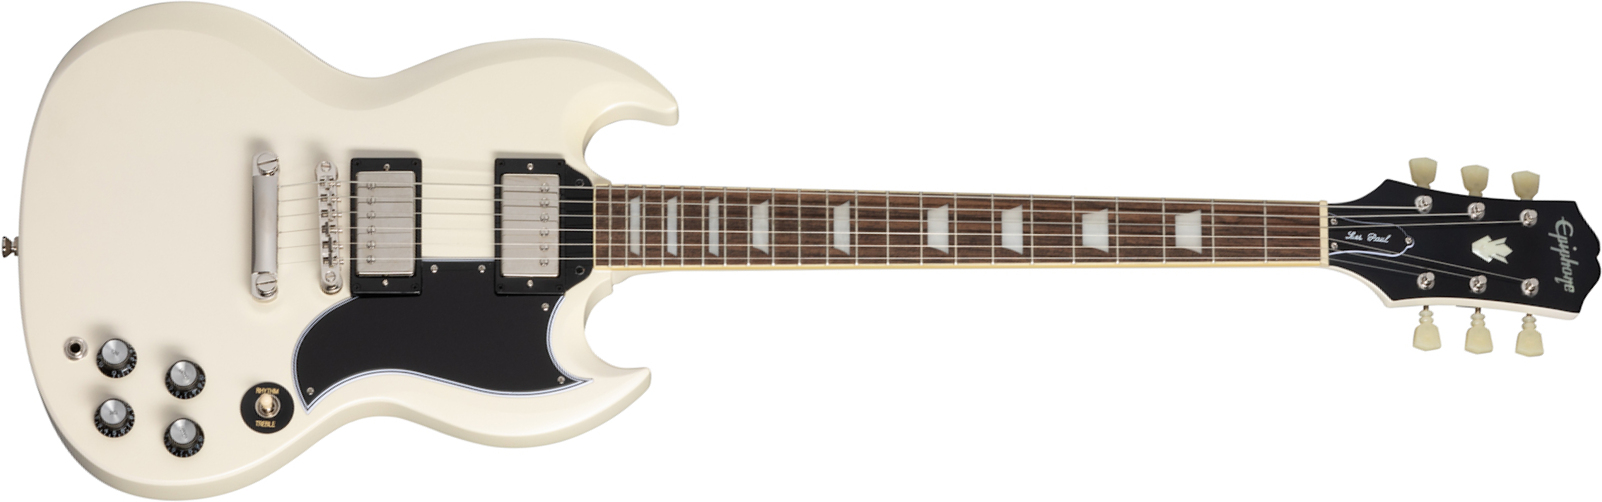 Epiphone Sg Les Paul Standard 1961 2h Ht Lau - Aged Classic White - Guitarra eléctrica de doble corte. - Main picture